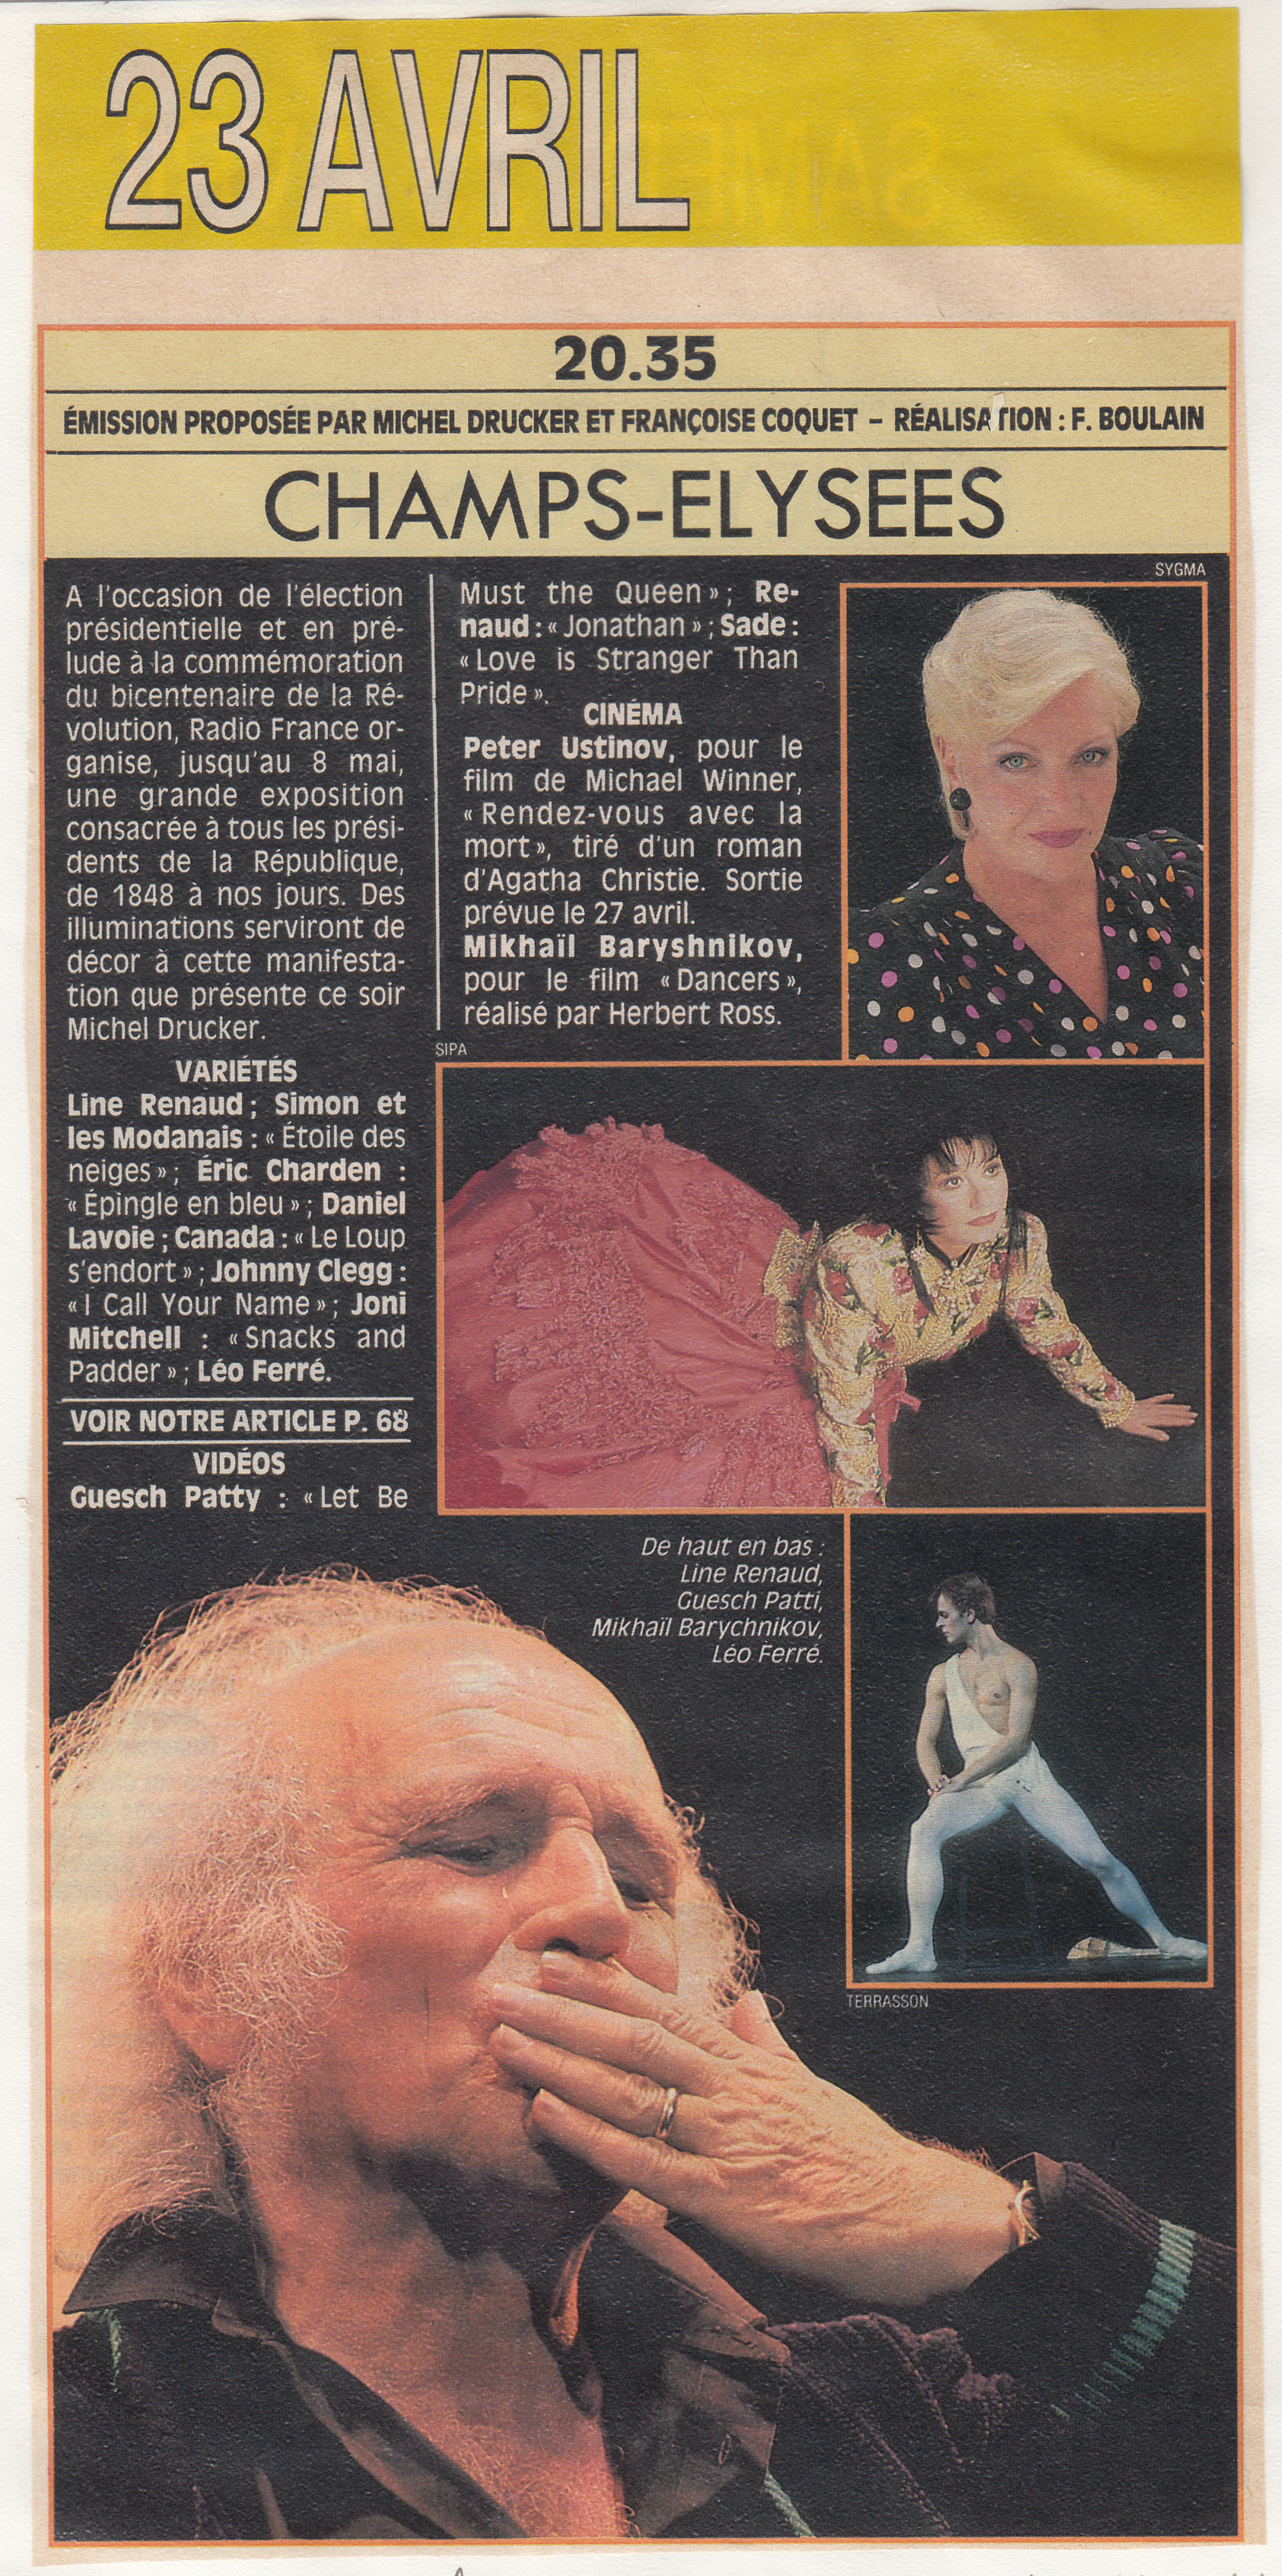 Léo Ferré - Le Figaro TV magazine du 16/04/1988